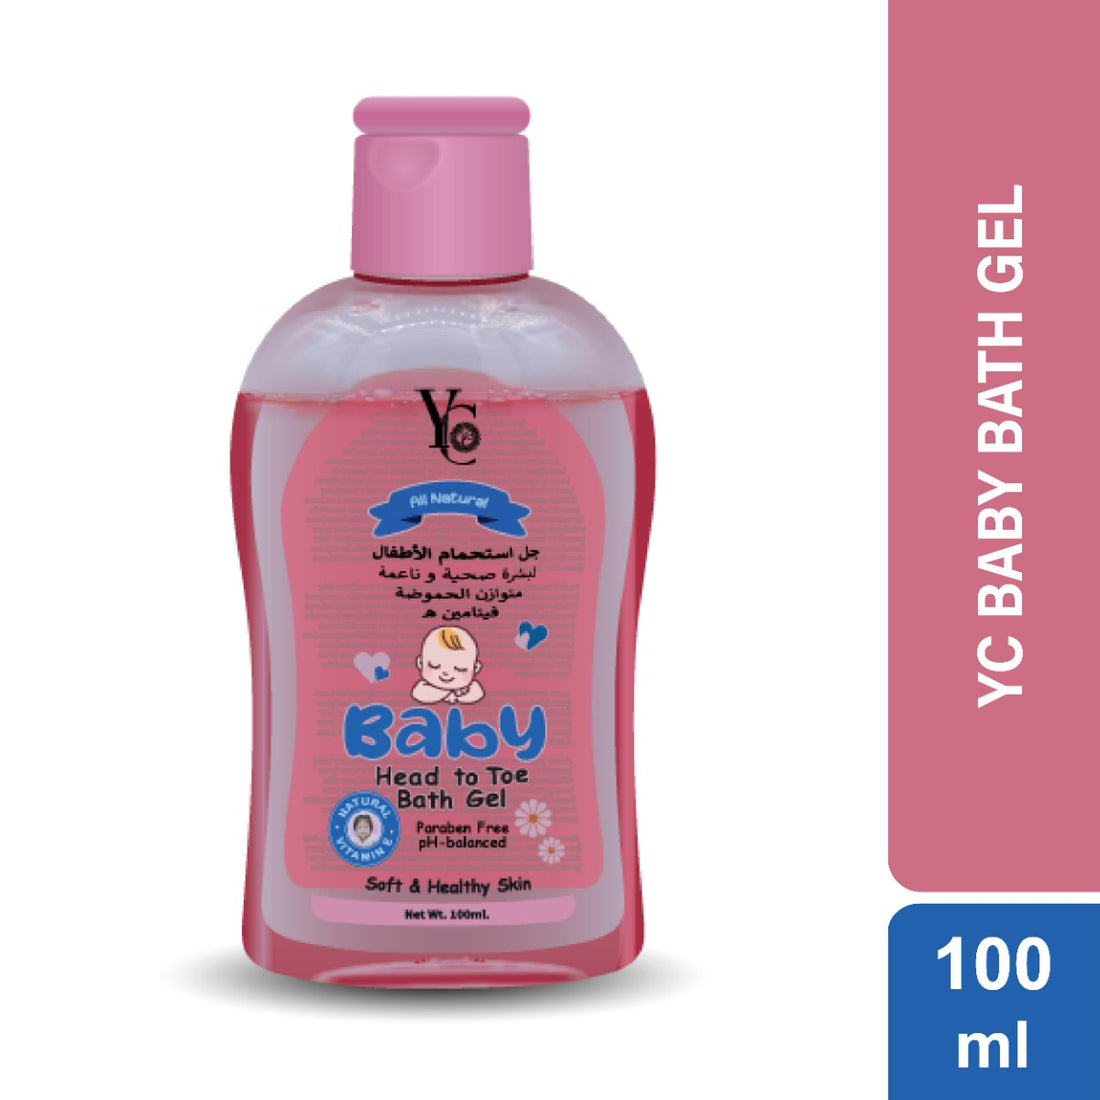 YC Baby Head To Toe Bath Gel (100ml)